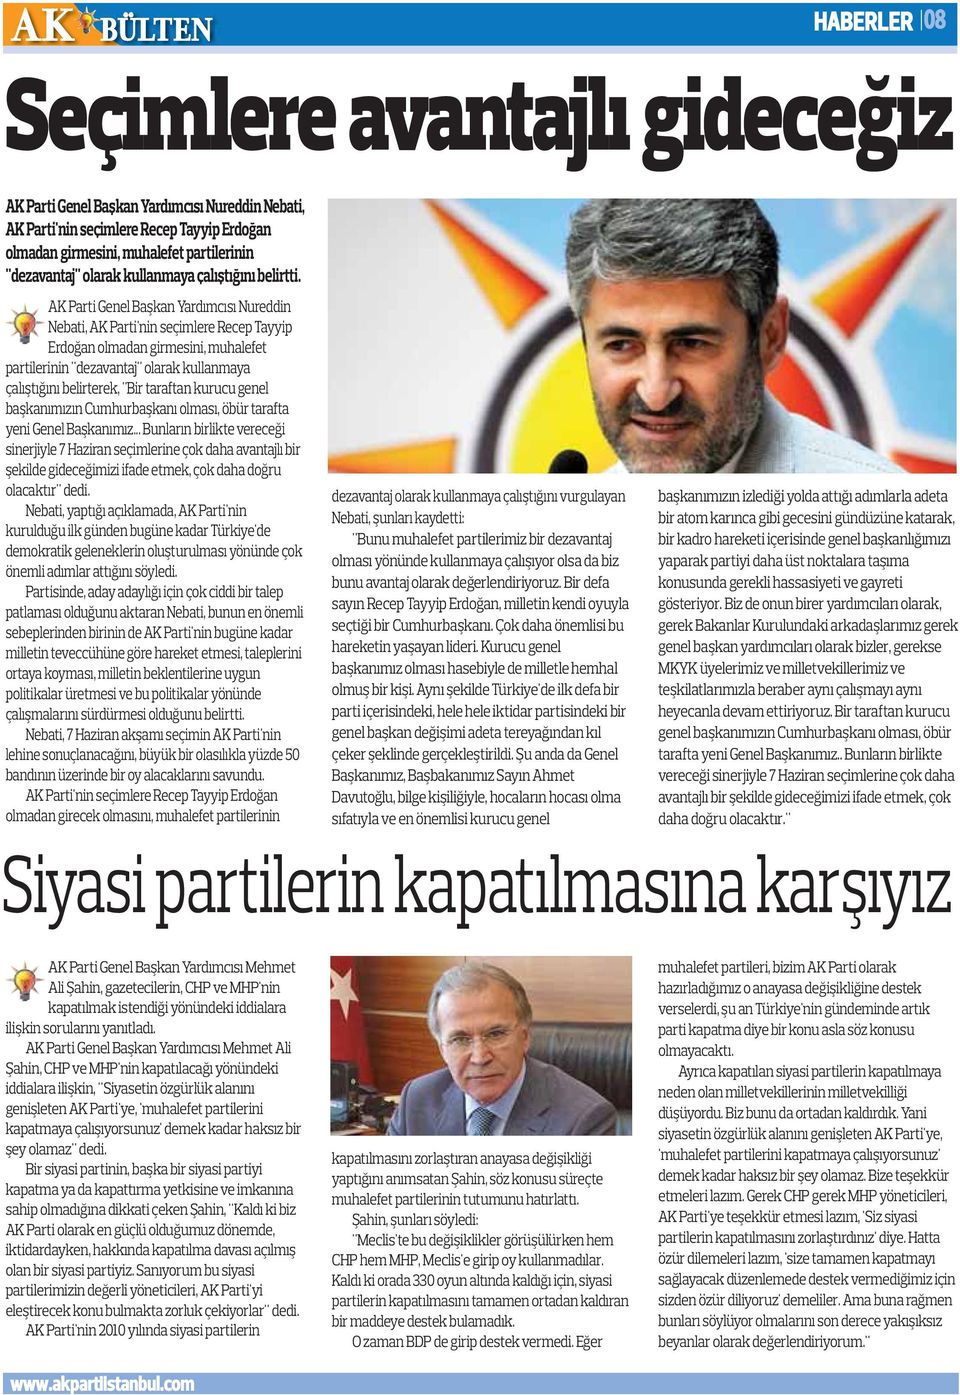 AK Parti Genel Başkan Yardımcısı Nureddin Nebati, AK Parti'nin seçimlere Recep Tayyip Erdoğan olmadan girmesini, muhalefet partilerinin "dezavantaj" olarak kullanmaya çalıştığını belirterek, "Bir